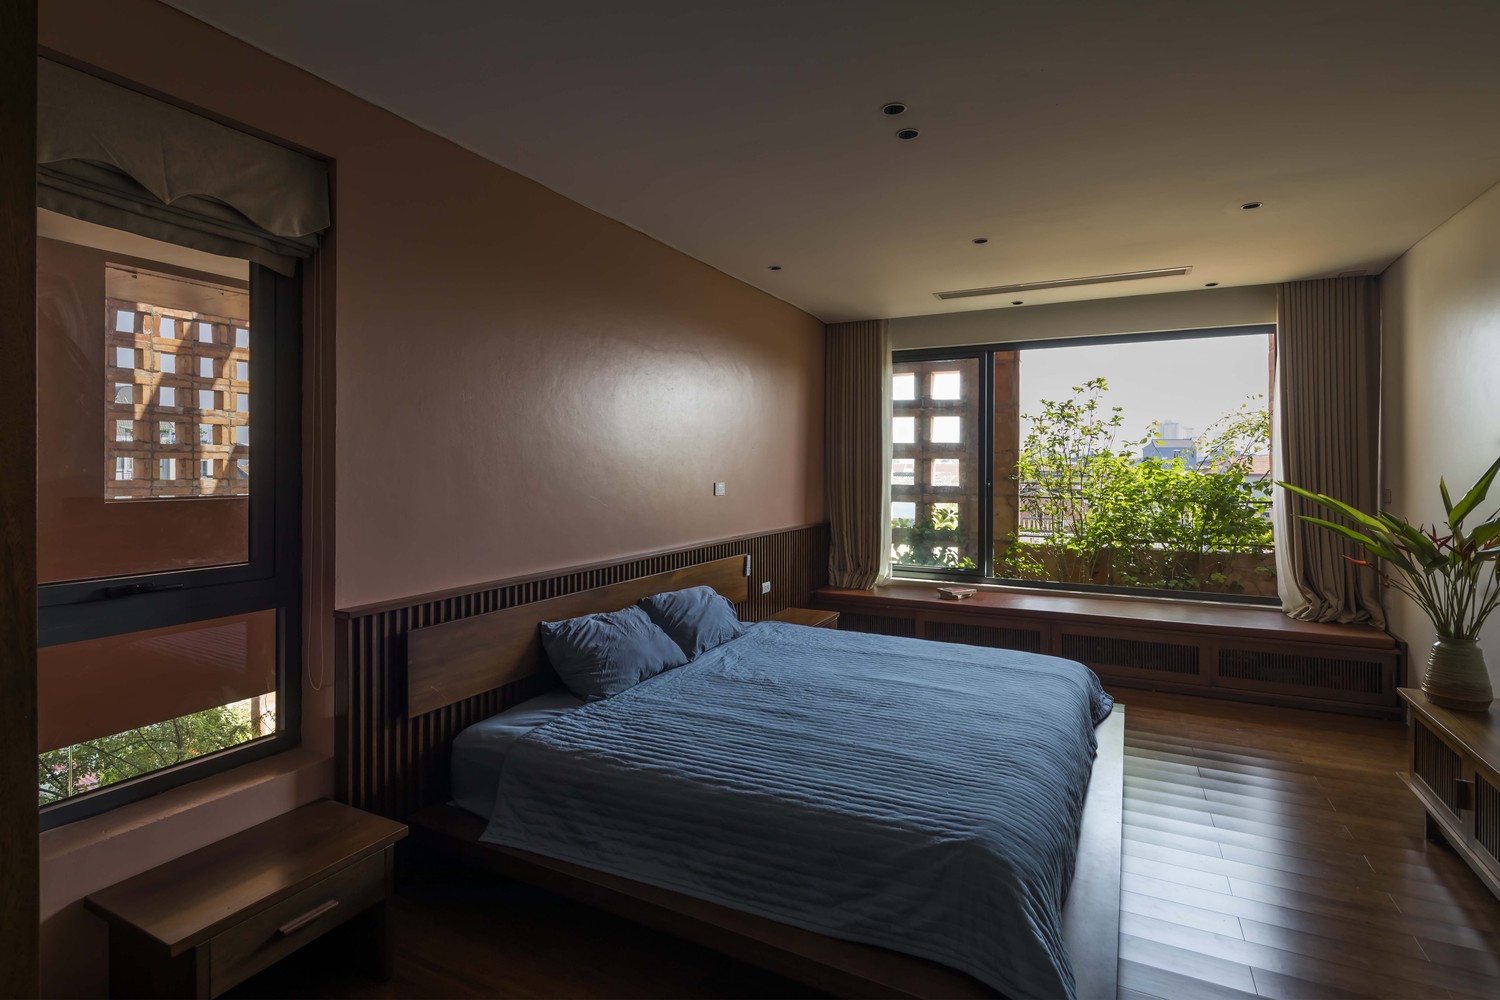 hình ảnh phòng ngủ rộng rãi, giường thấp, ga màu xanh than, cửa sổ kính rộng mở ra vườn cây xanh bên ngoài